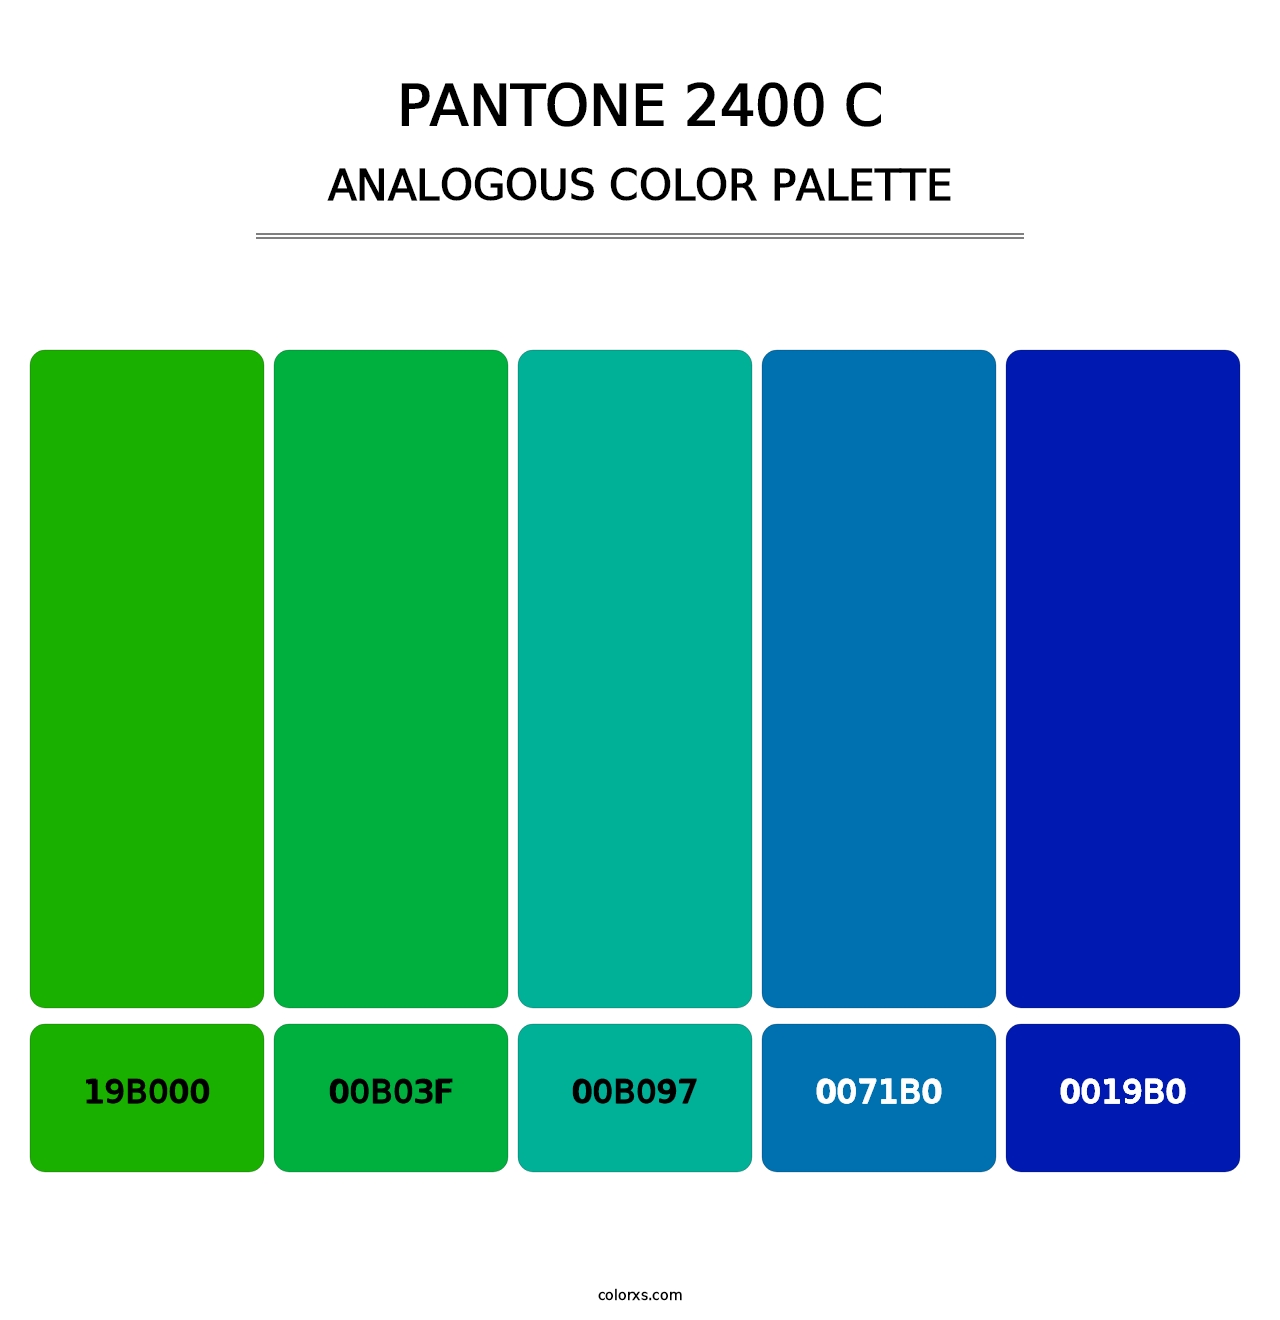 PANTONE 2400 C - Analogous Color Palette